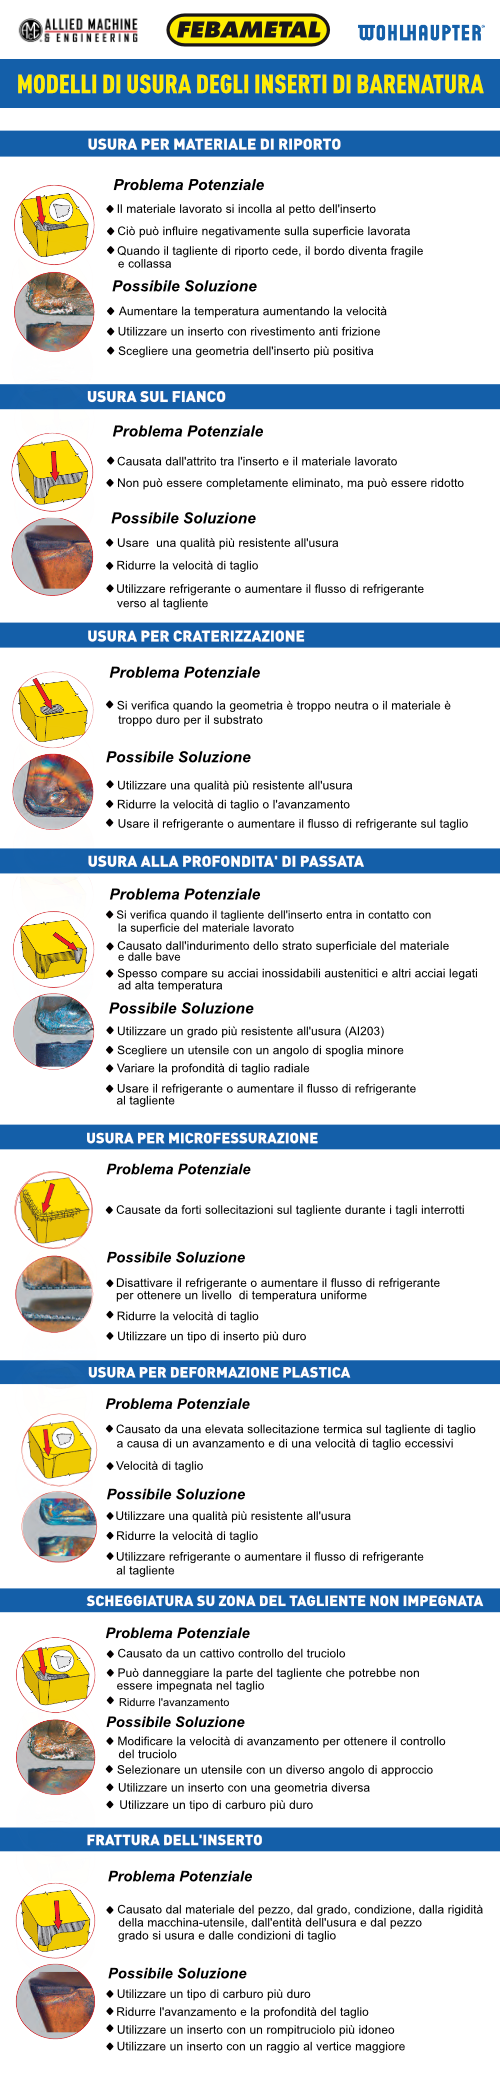 guida_usura_degli_inserti_di_barenatura-_tipologie_e_soluzioni_applicabili.png